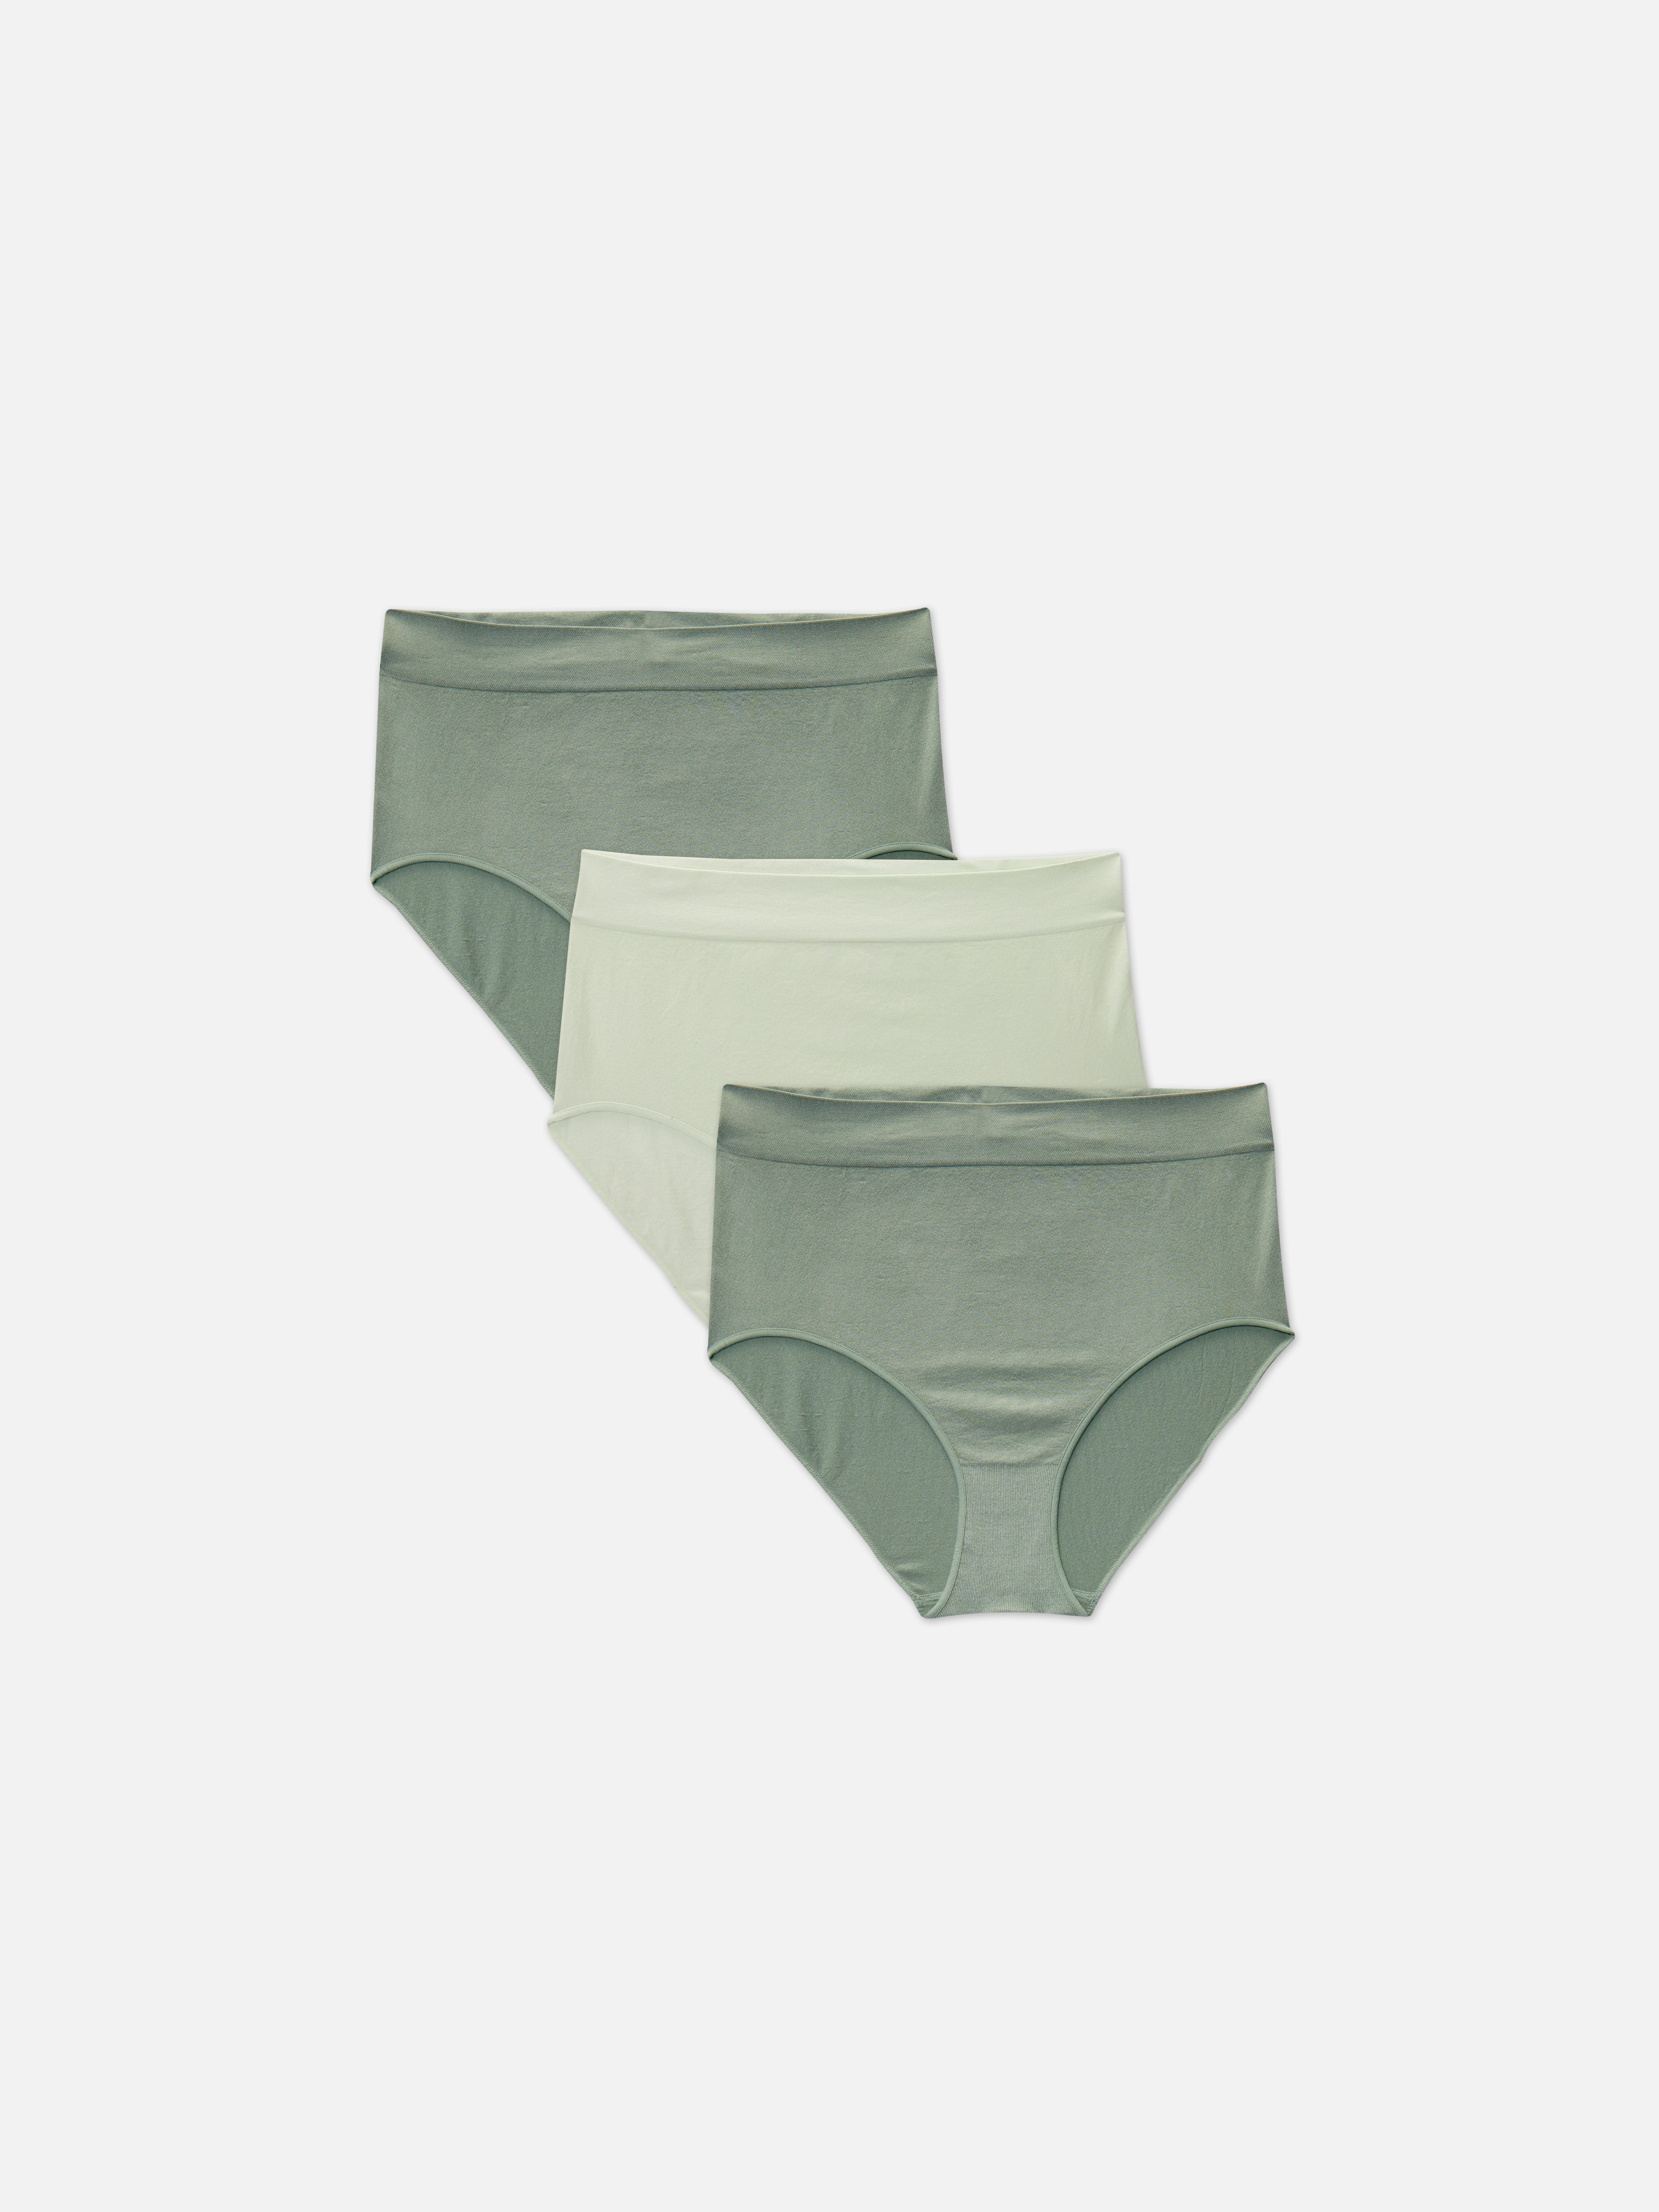 adidas Underwear Highwaist Brief – panties – shop at Booztlet